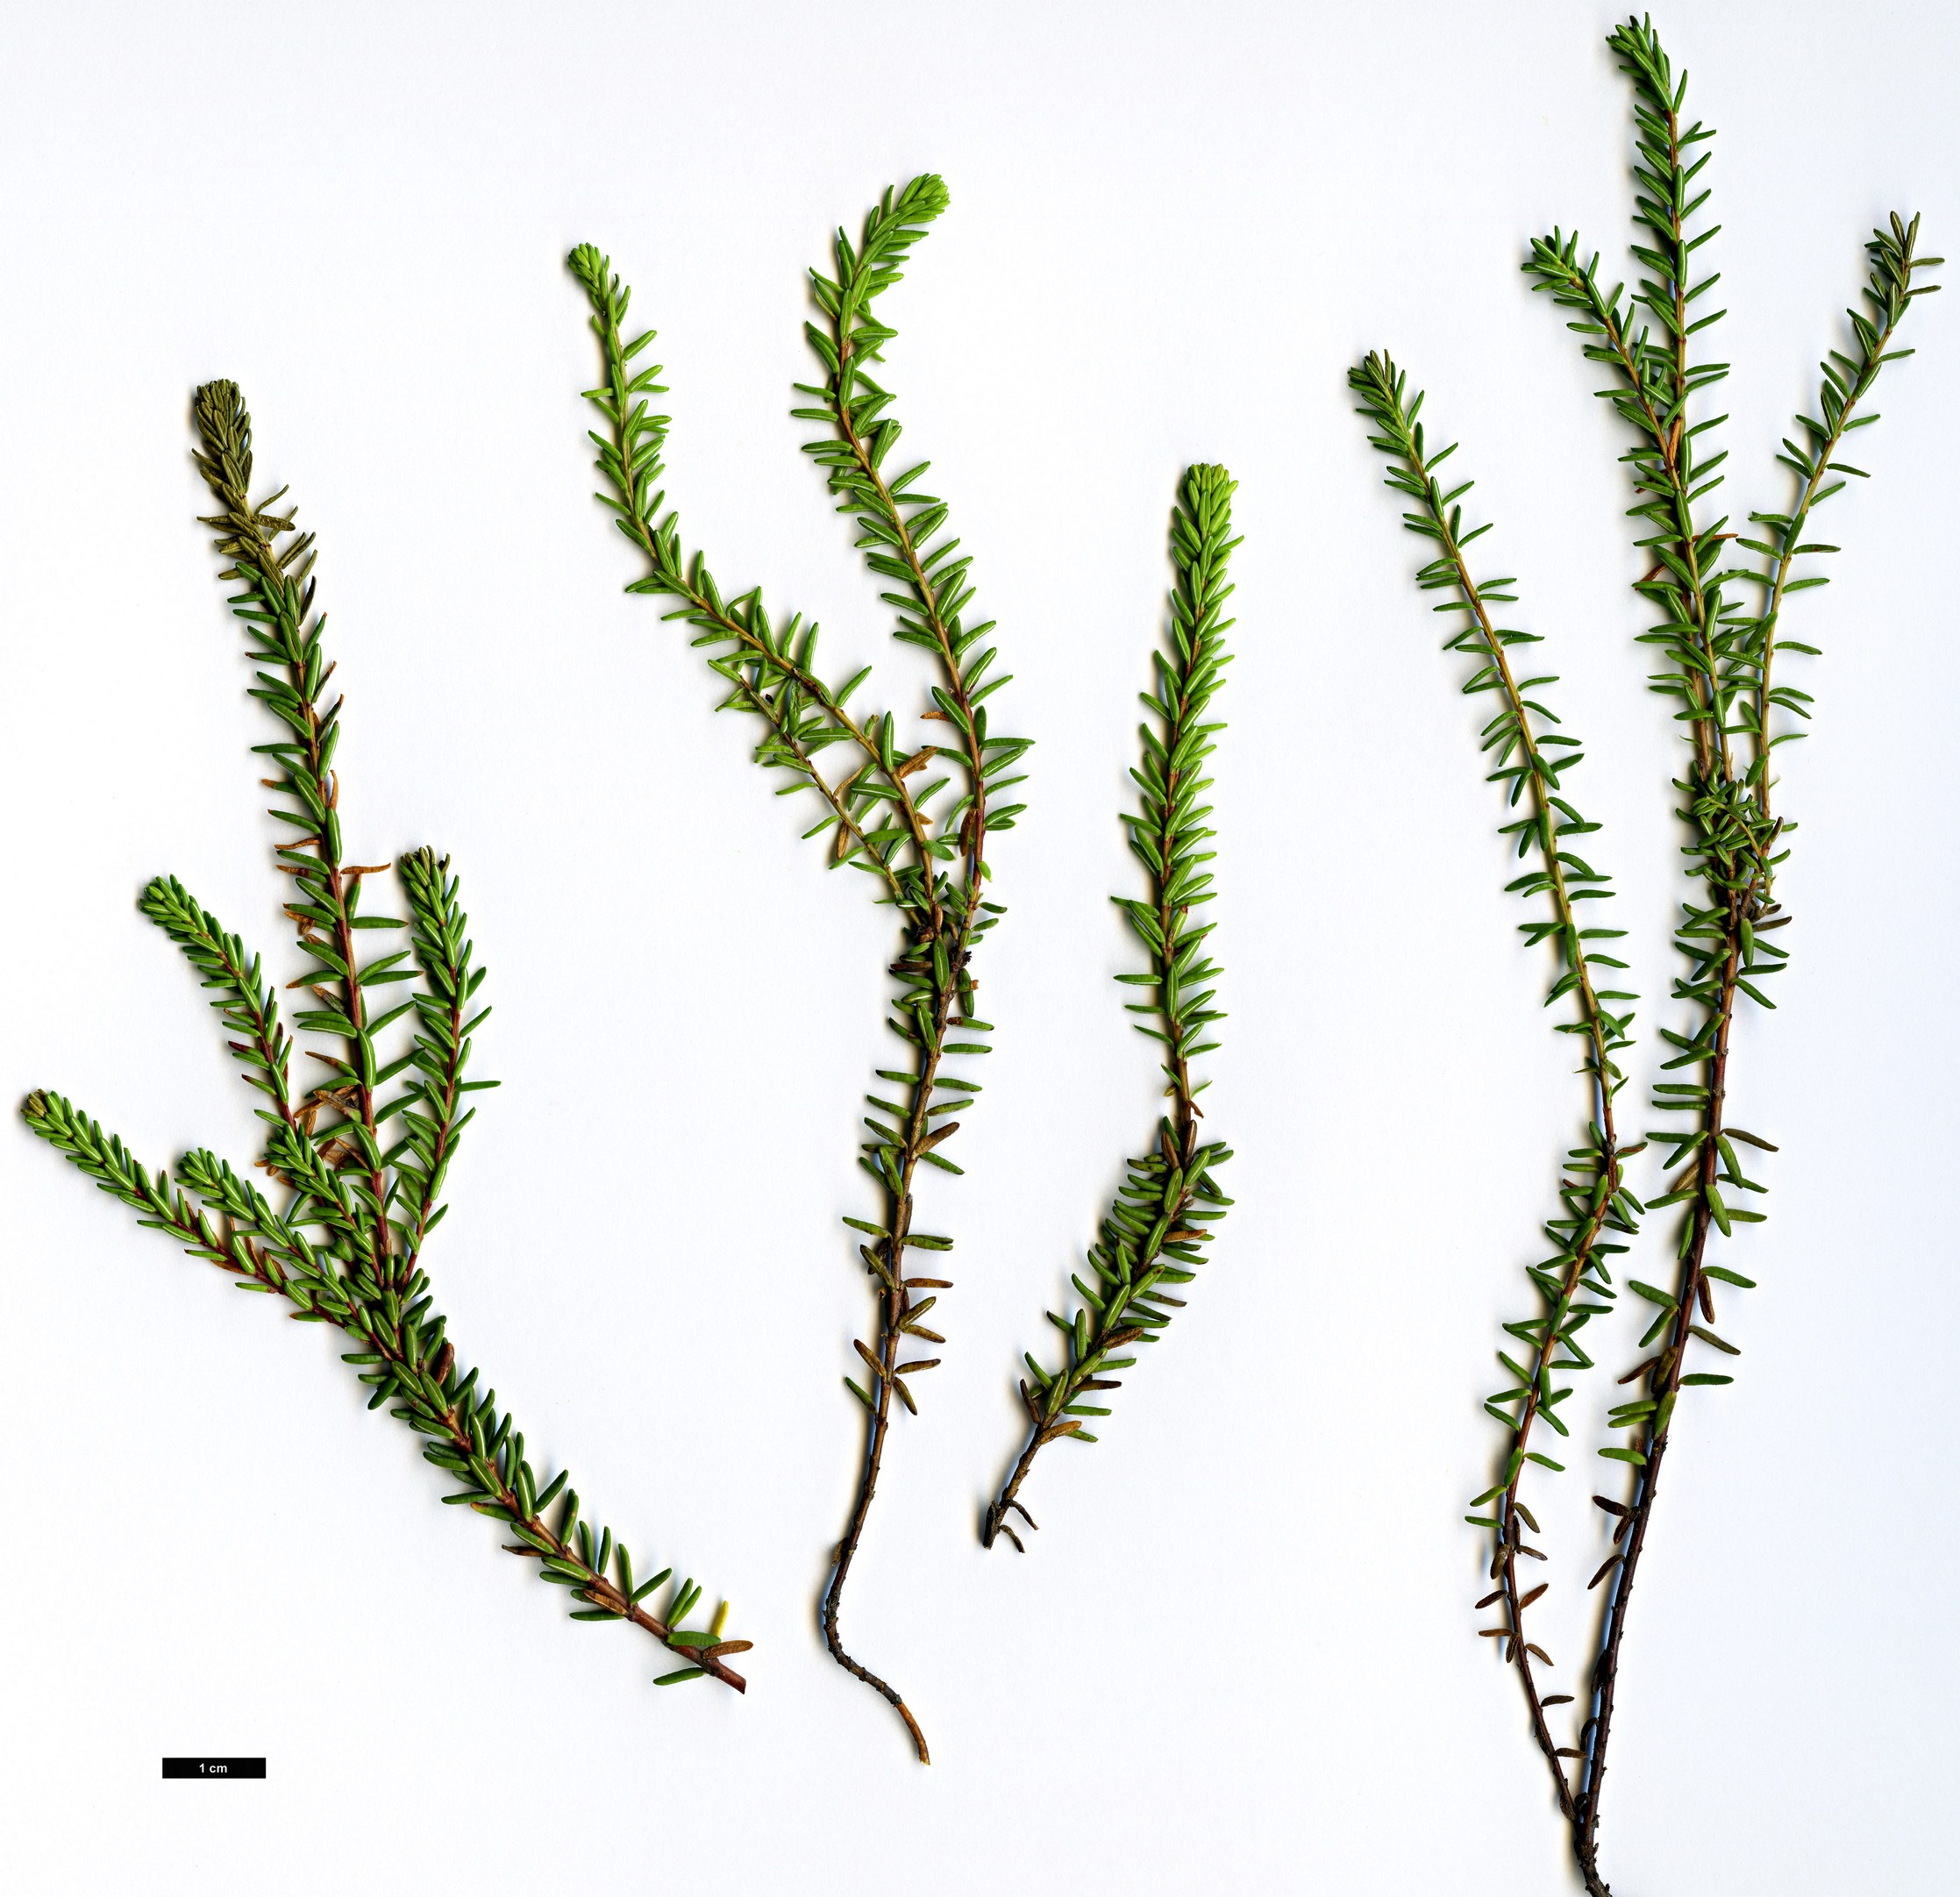 High resolution image: Family: Ericaceae - Genus: Empetrum - Taxon: nigrum - SpeciesSub: subsp. hermaphroditum